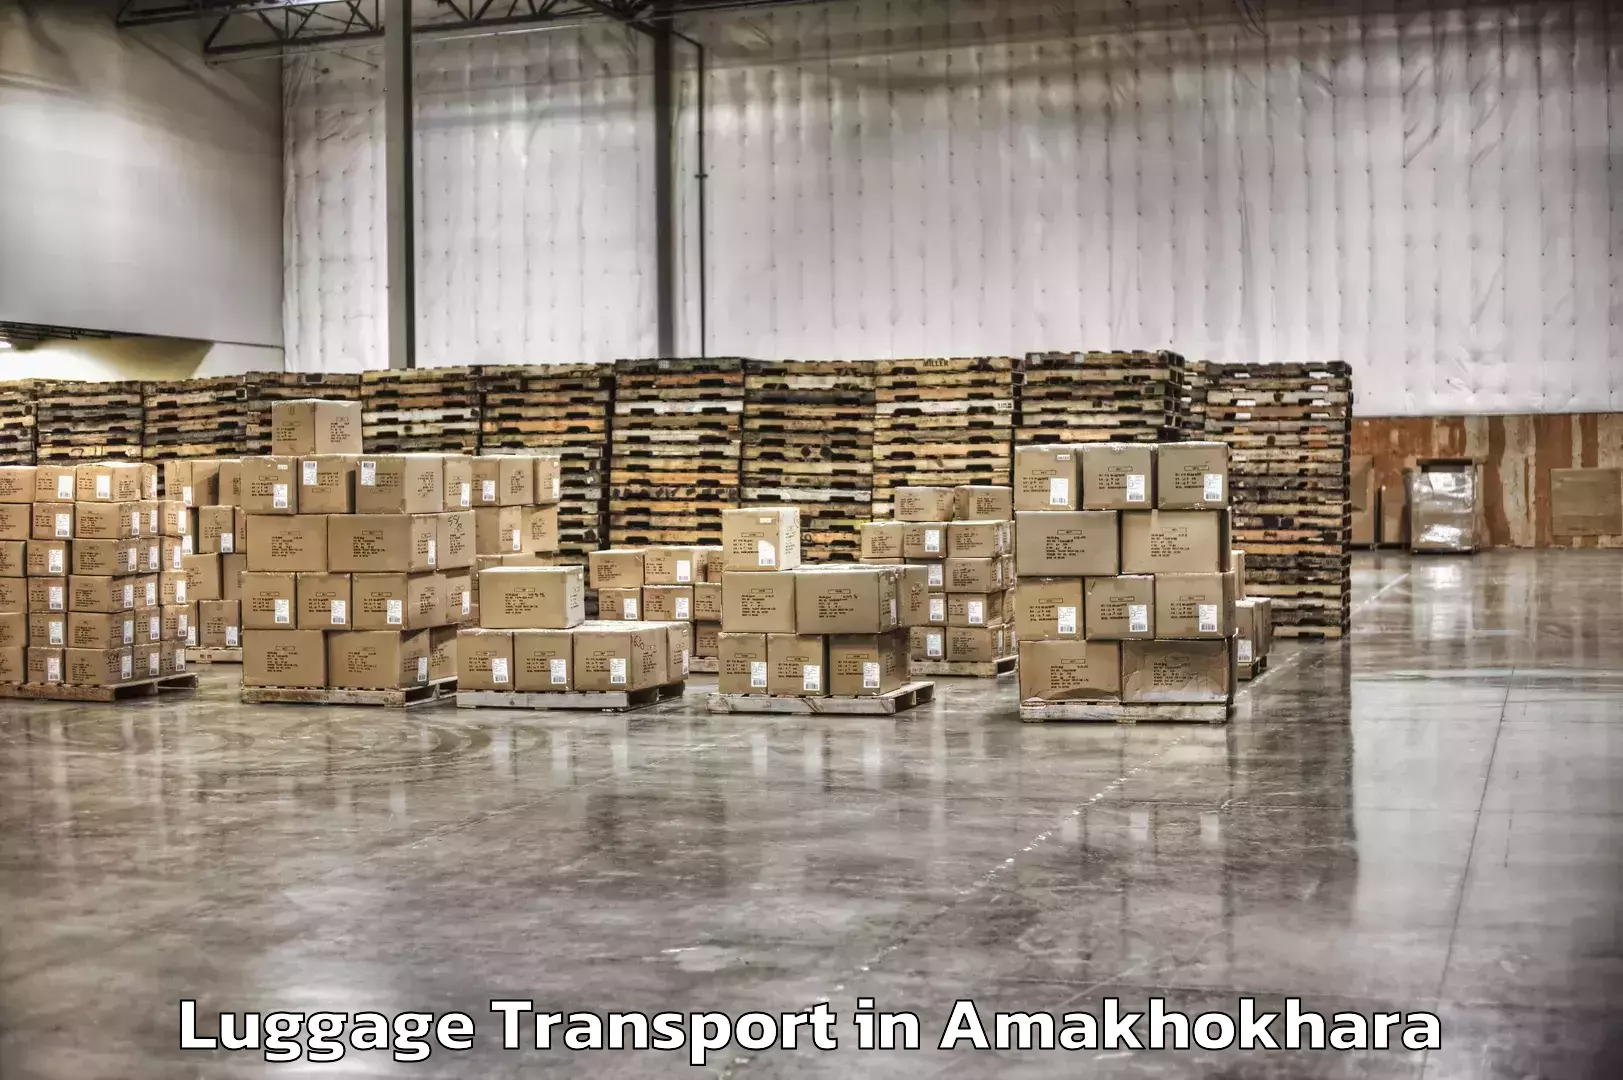 Luggage transport operations in Amakhokhara